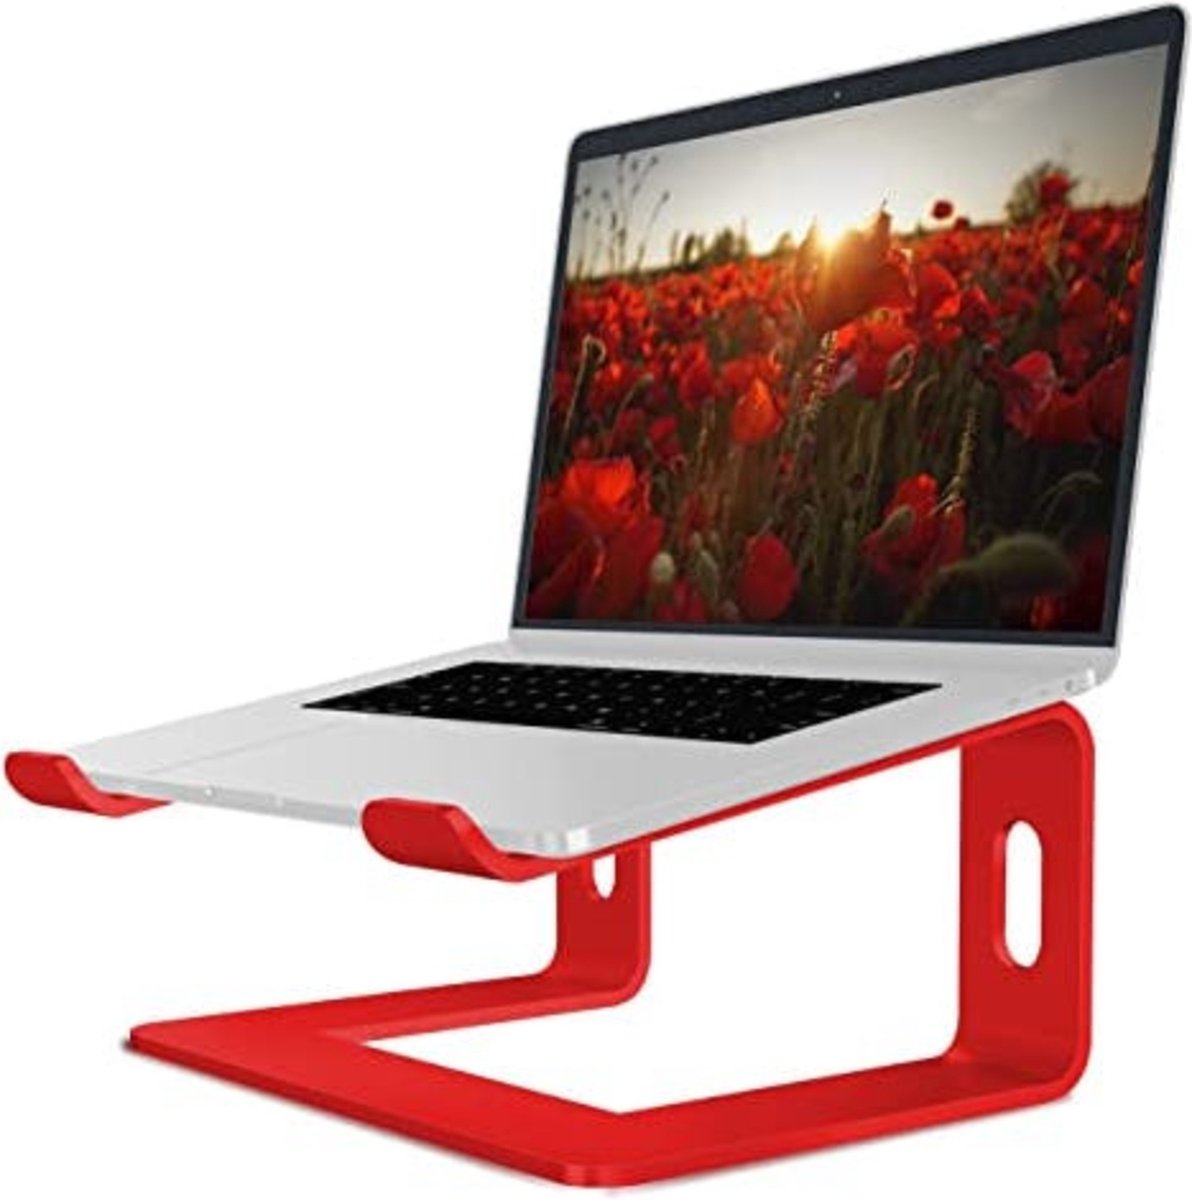 SFT Products Luxe Laptopstandaard van Aluminium Rood - Zwarte Laptophouder - Verhoogde Notebook Standaard - Ergonomische Laptophouder - Rode Laptopstandaard van Aluminium